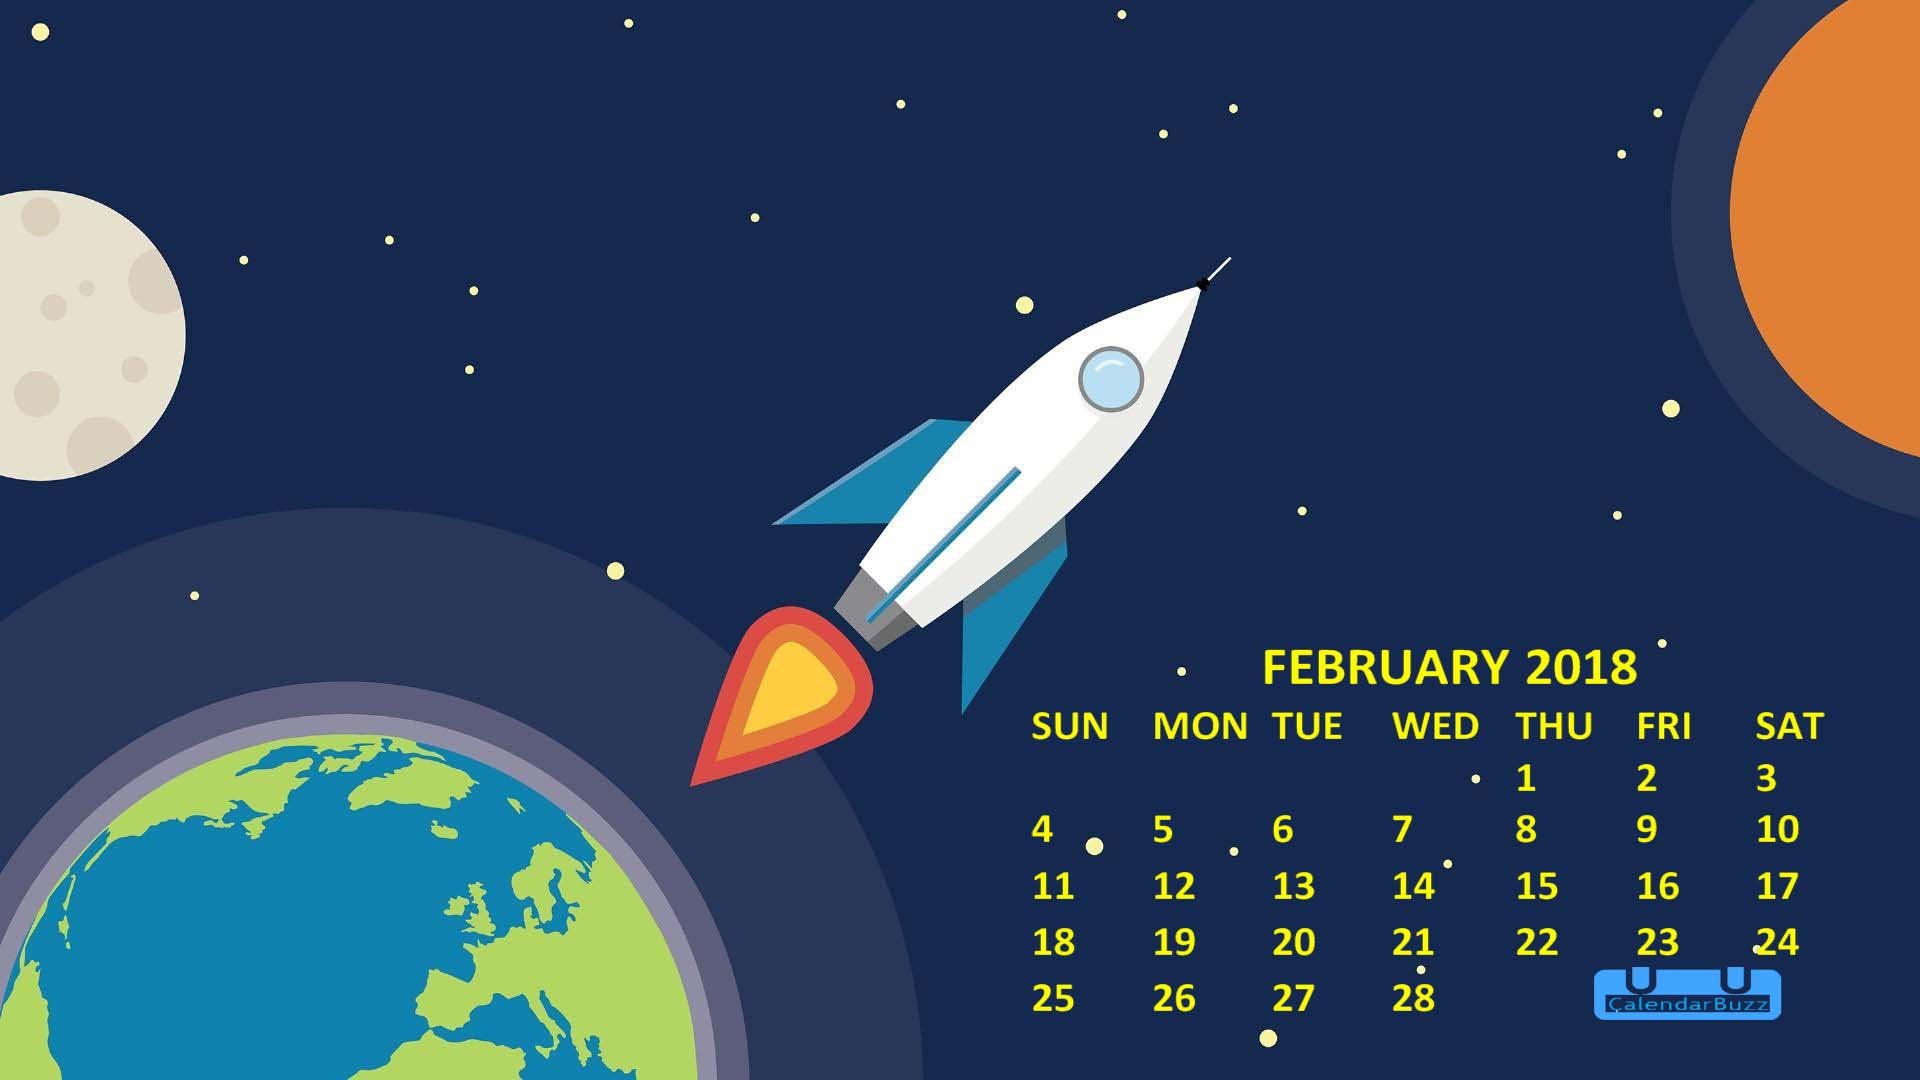 February 2018 Calendar Wallpaper Download CalendarBuzz 1920x1080